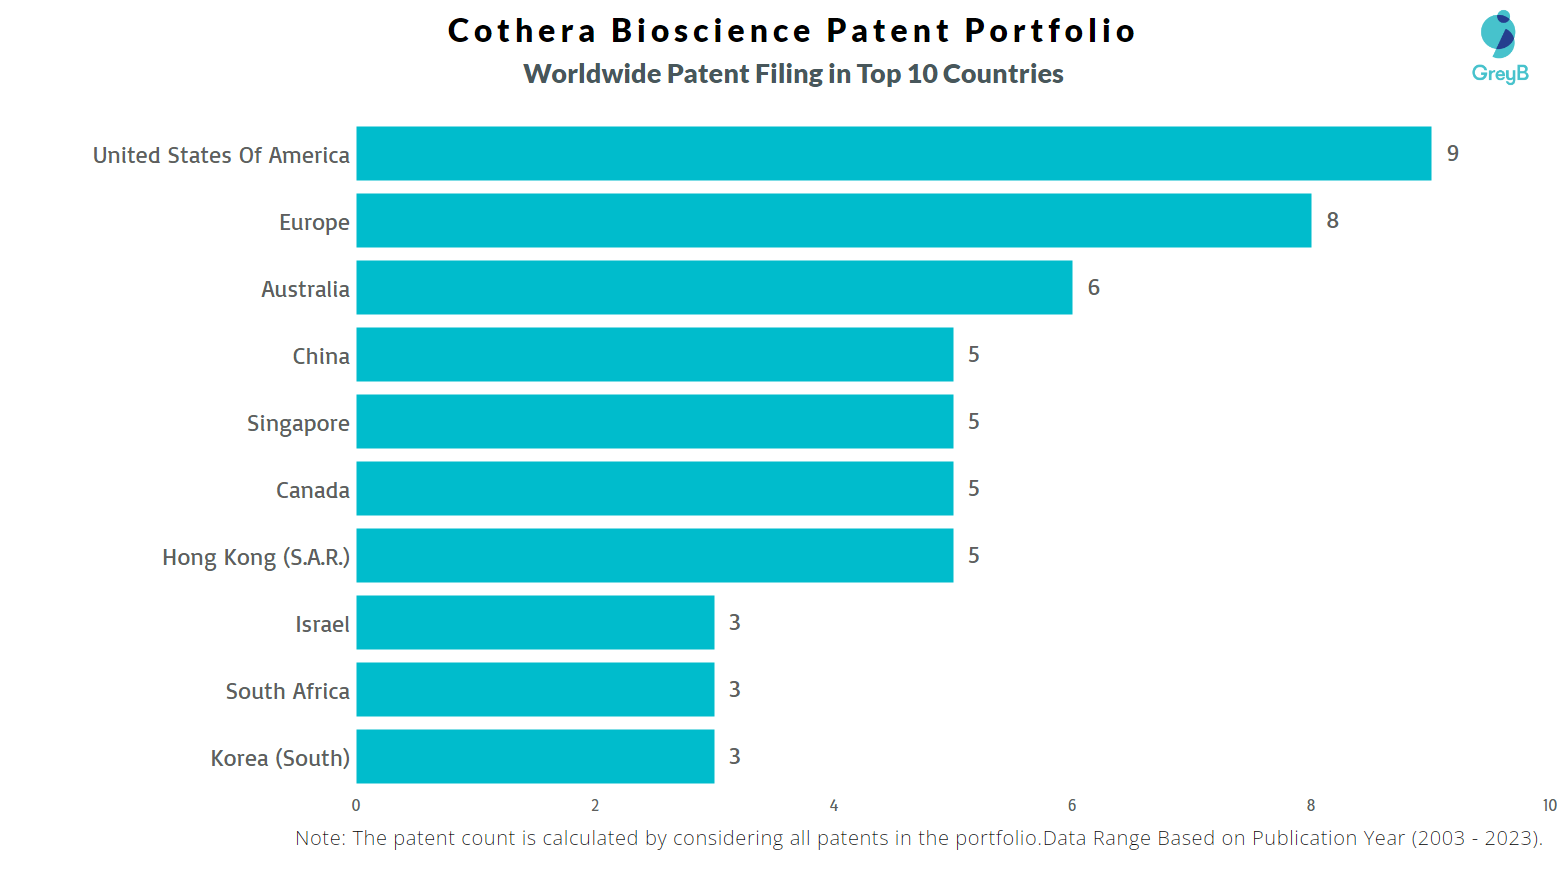 Cothera Bioscience Worldwide Patent Filing